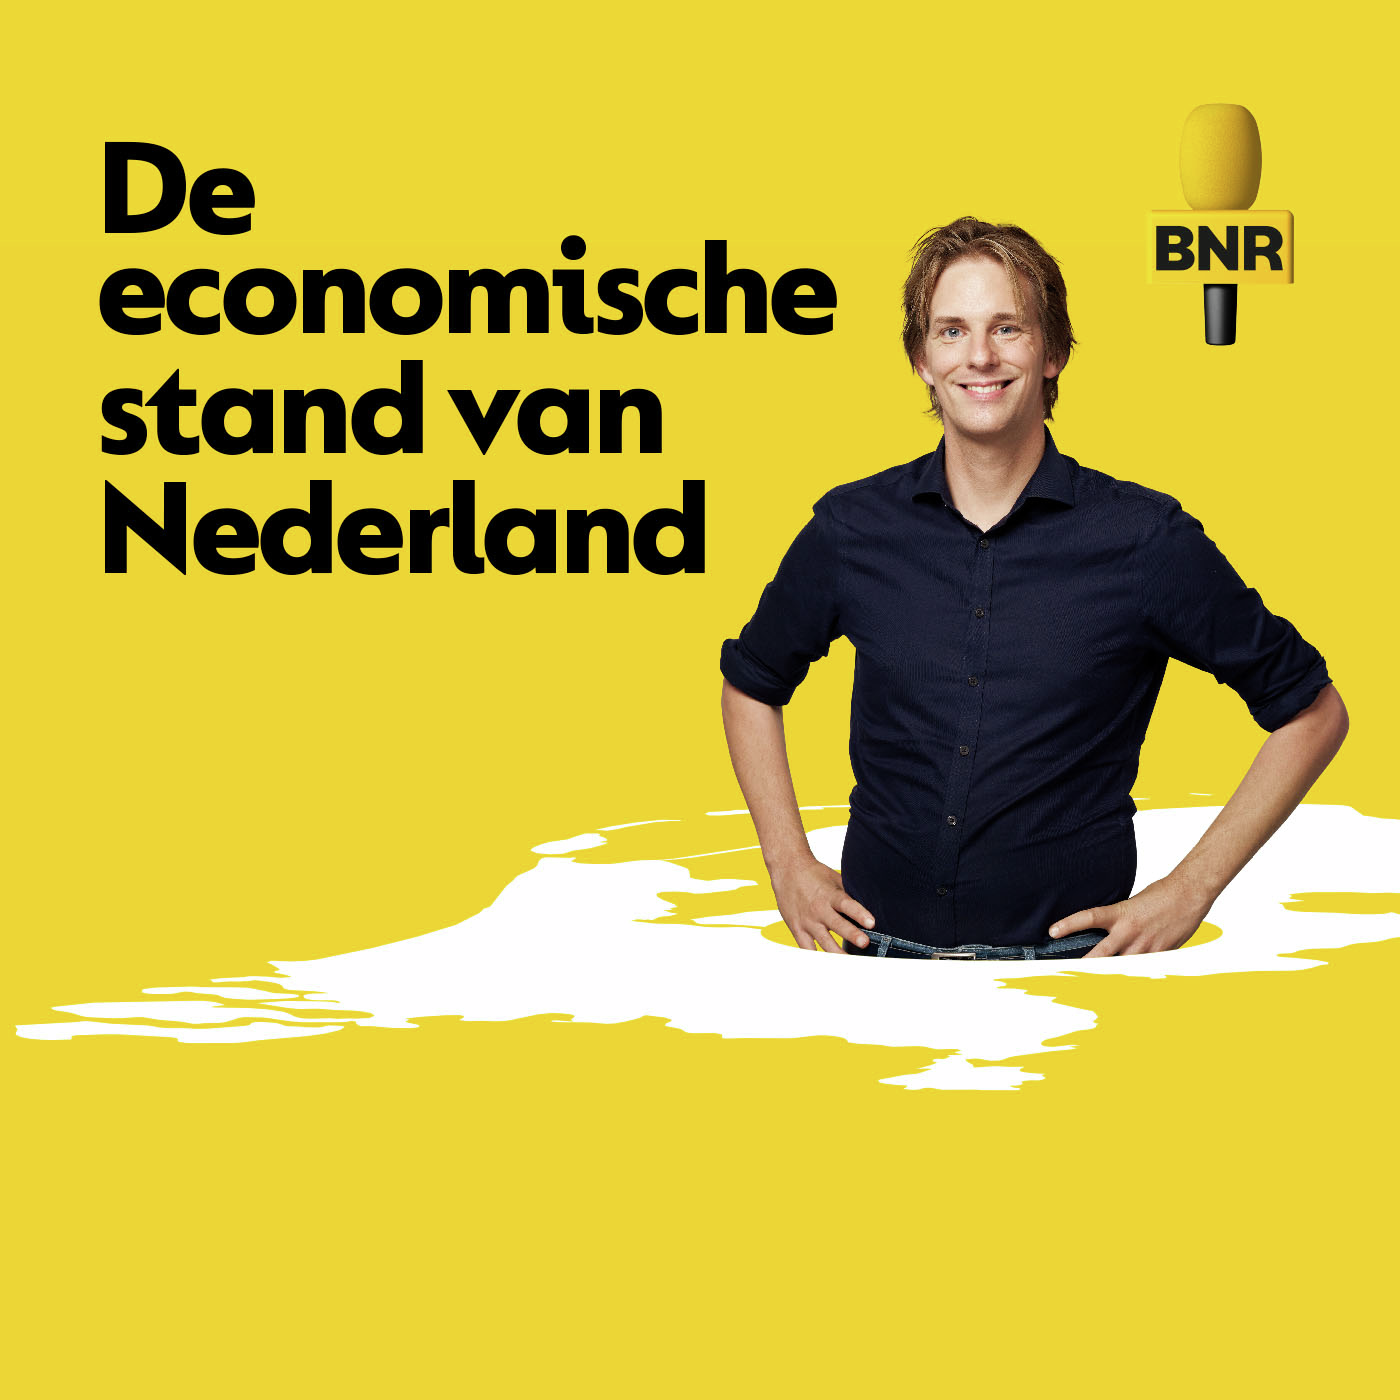 De economische stand van Nederland | Hoe krijg je iedereen mee in de energietransitie?